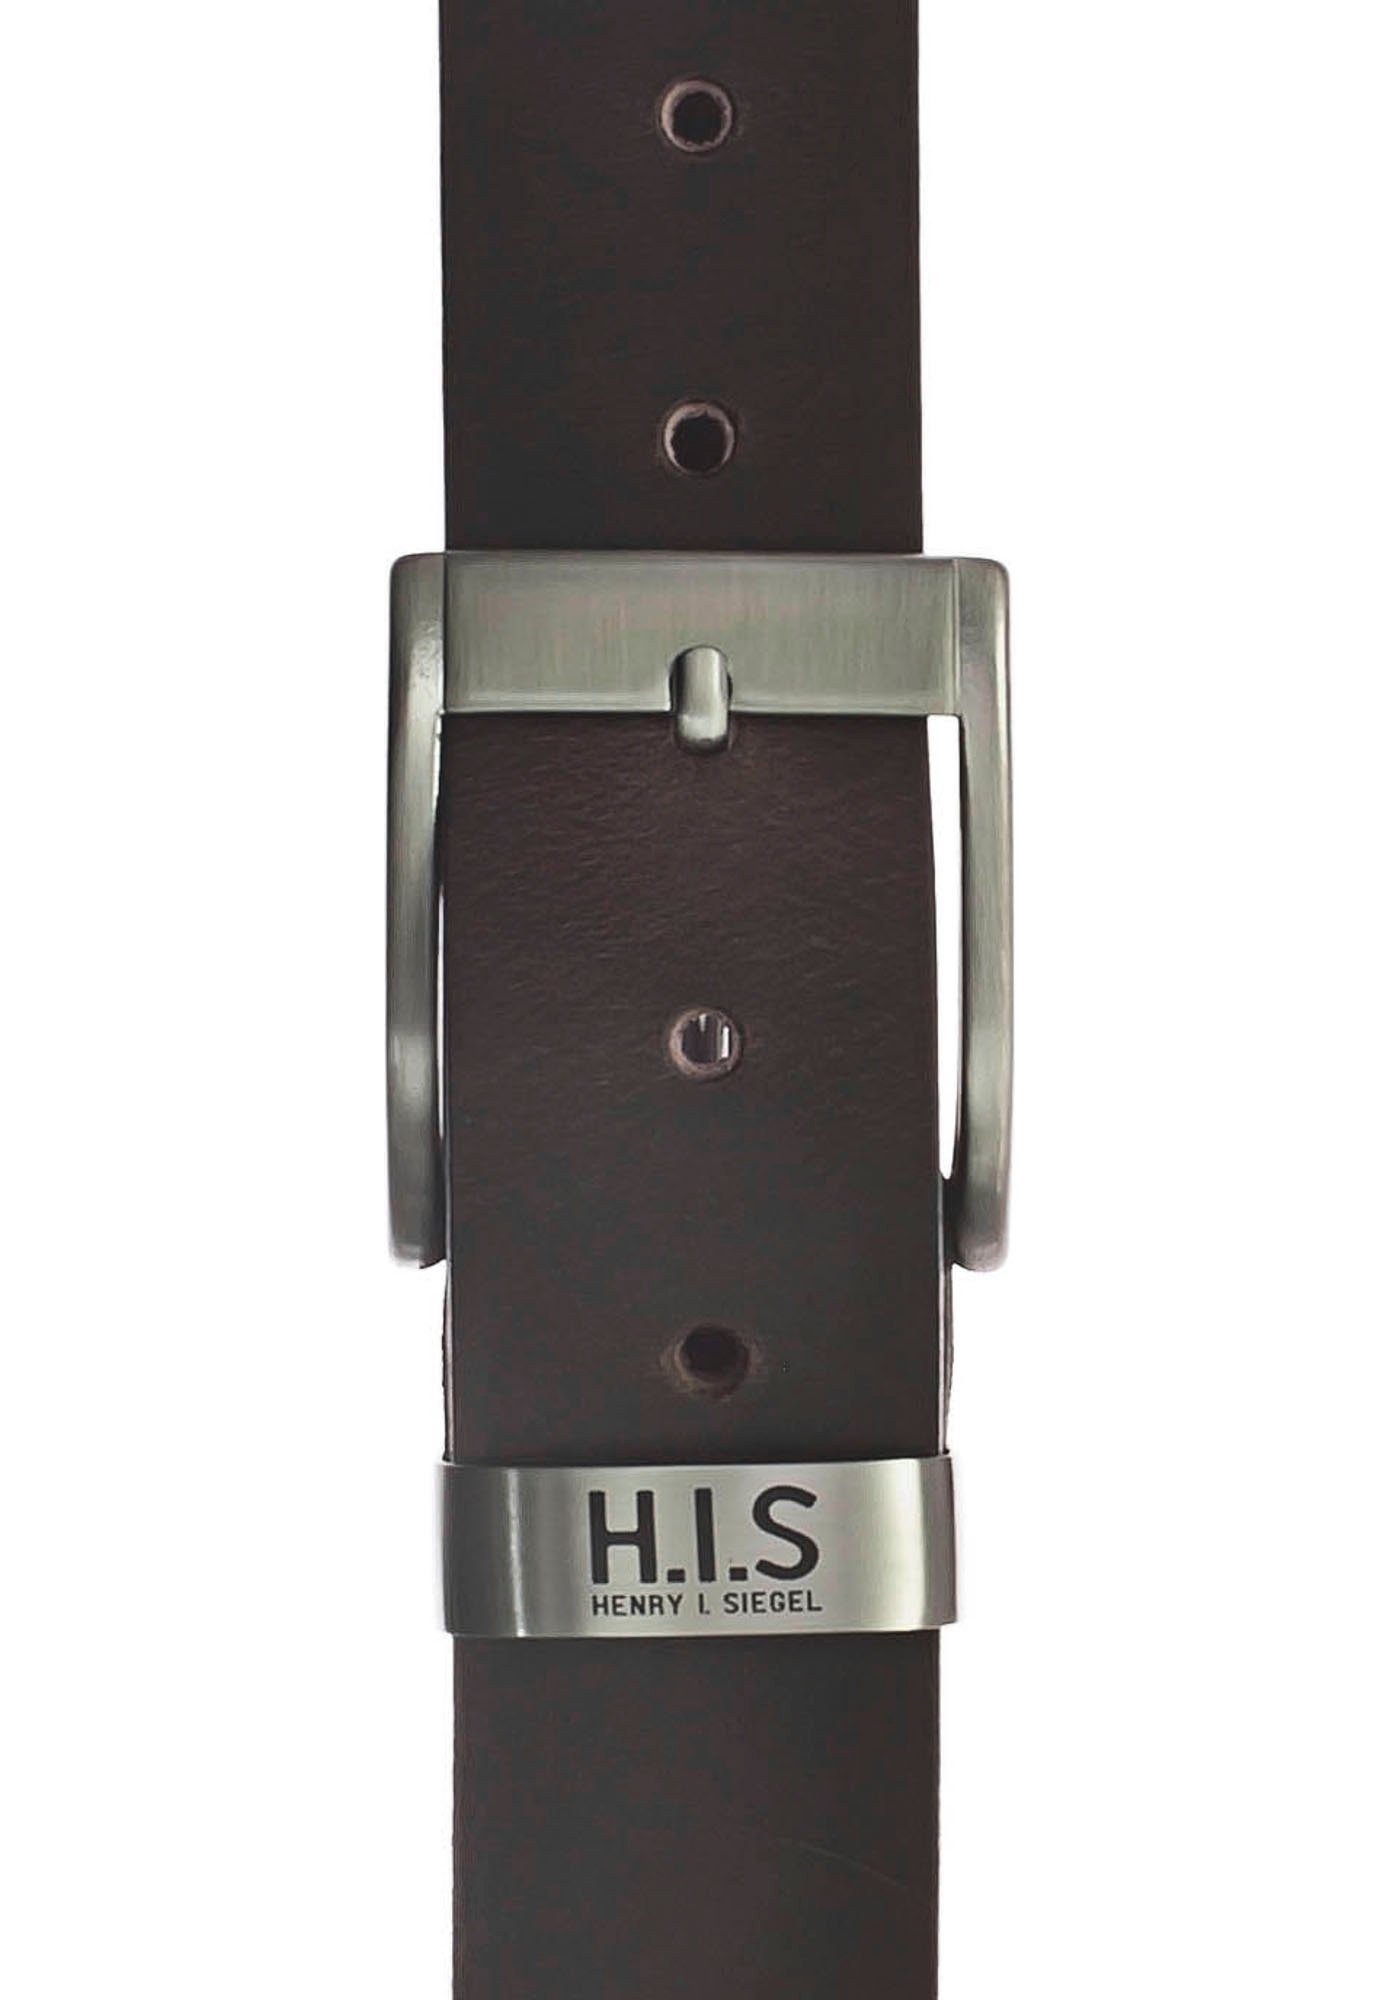 H.I.S Ledergürtel Vollrindledergürtel mit LOGO dunkelbraun Metallschlaufe und